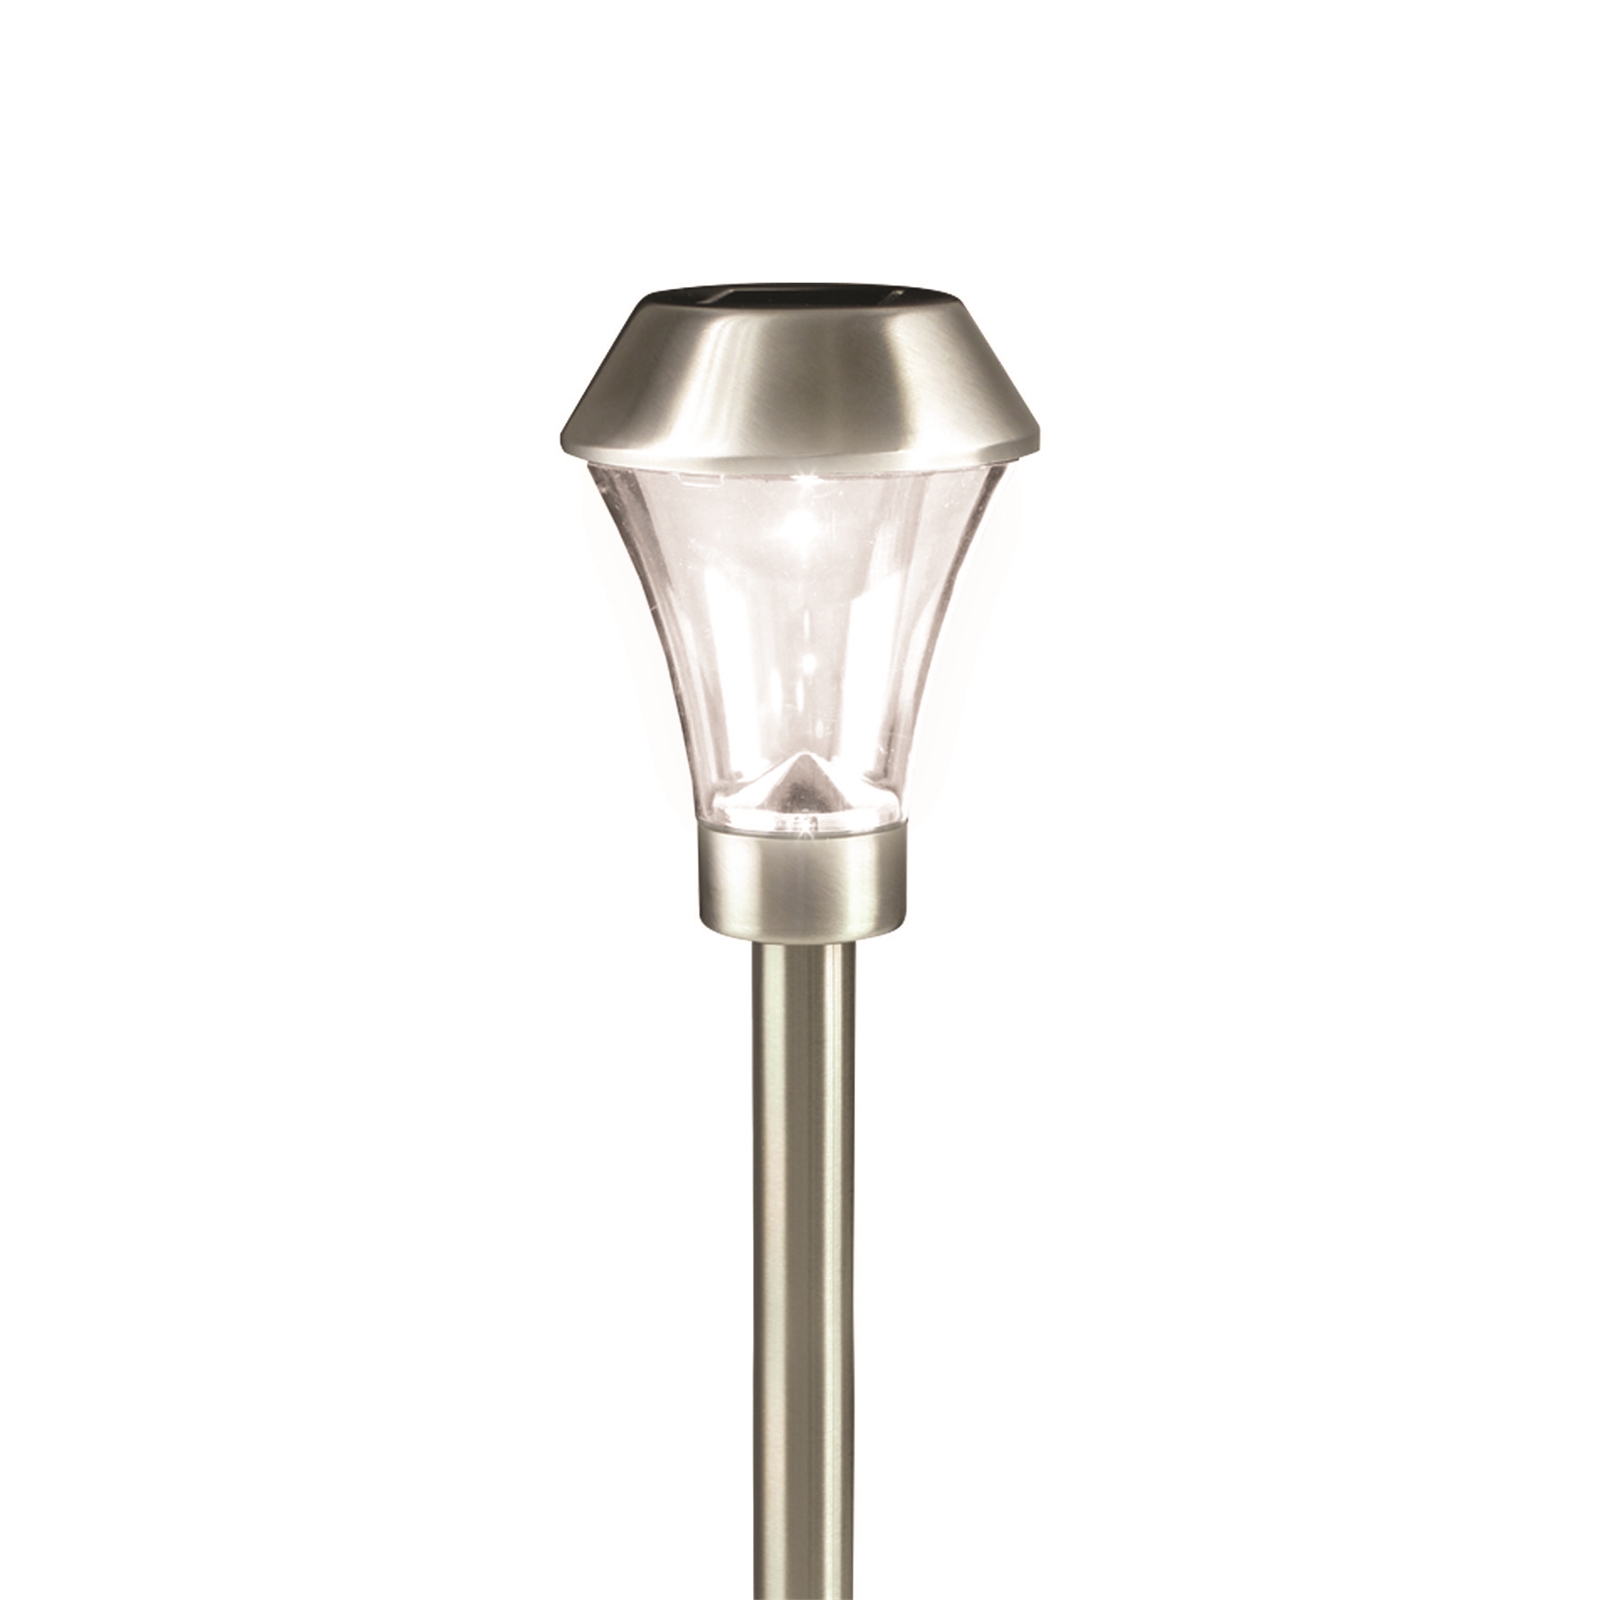 Lytworx Stainless Steel White LED Solar Light with Plastic Lens - 20 Pack